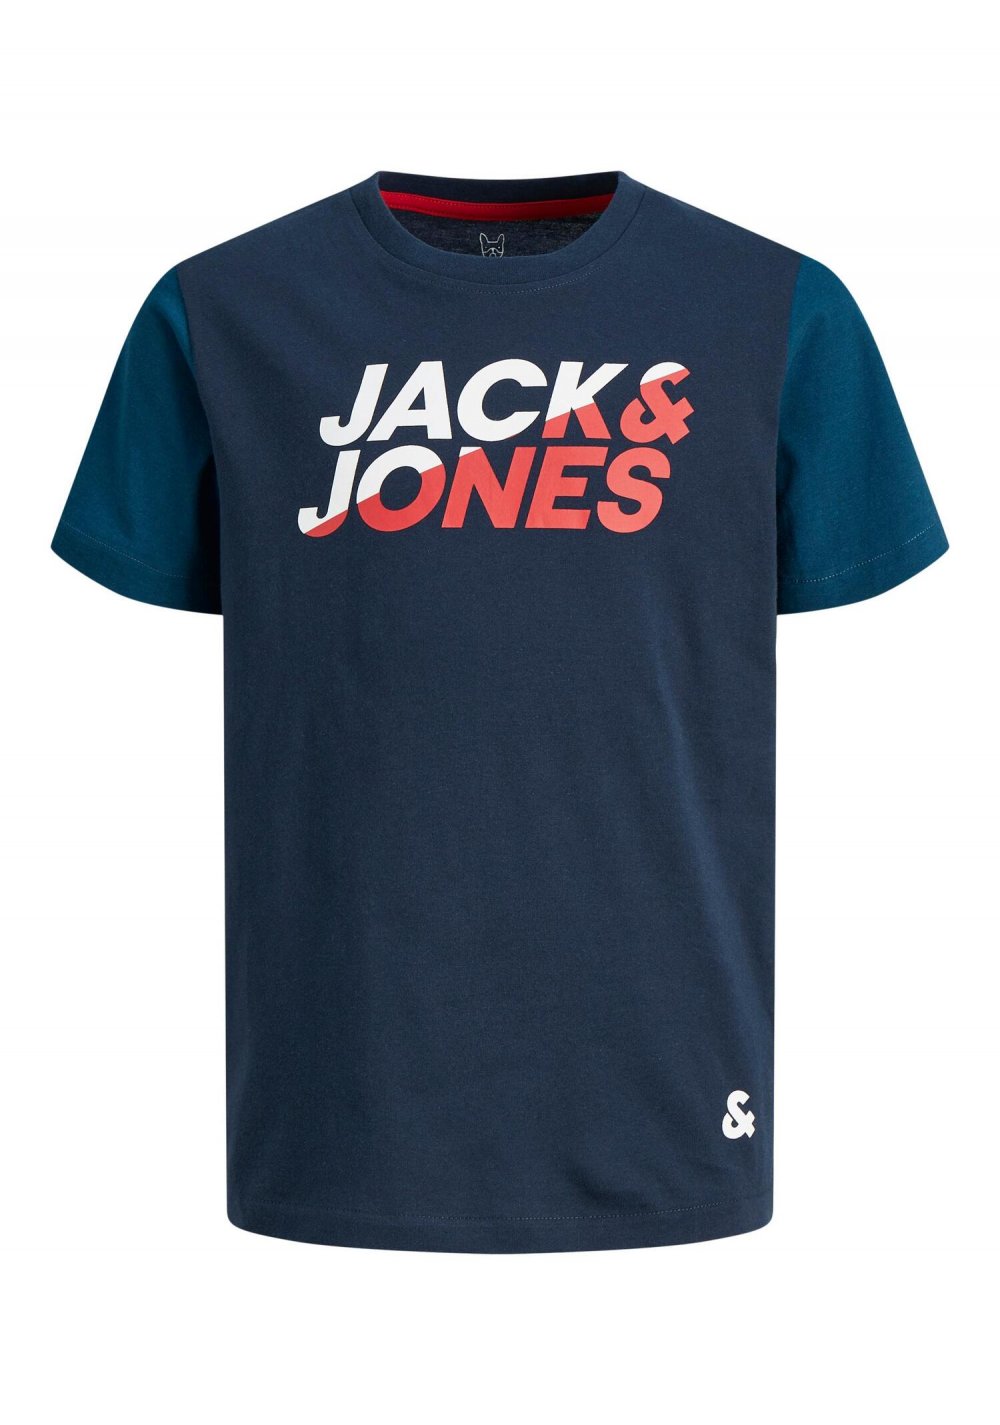 T-shirt Jack e jones da bambino e ragazzo - colore blu